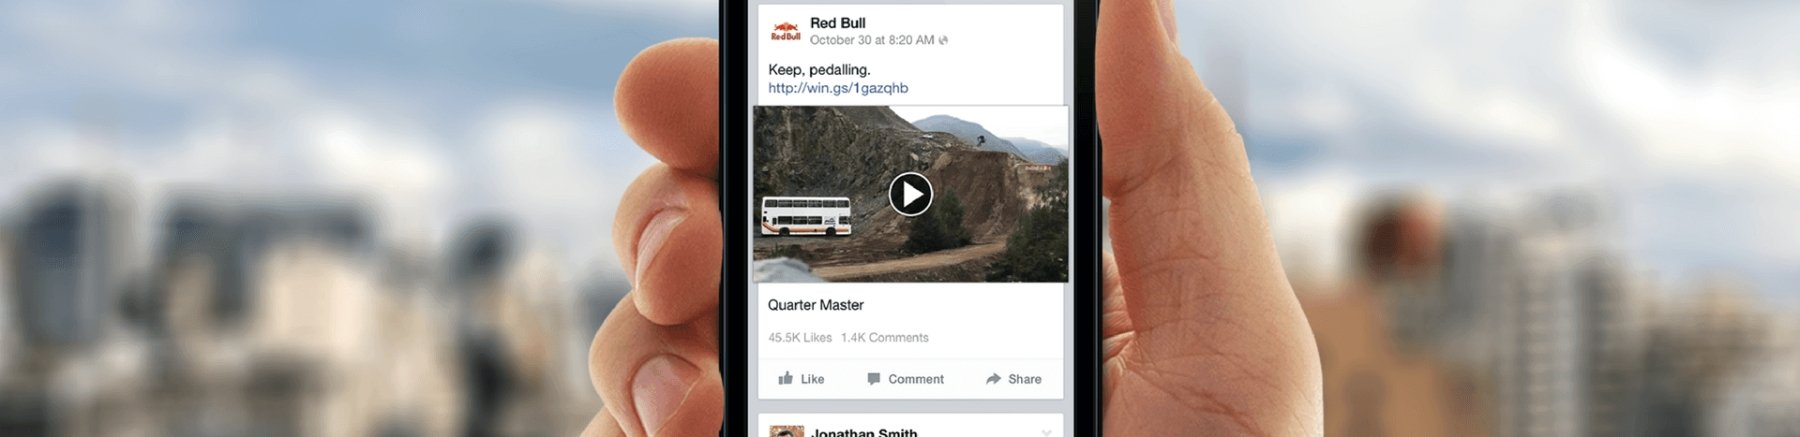 Facebook: i video conquistano il social network